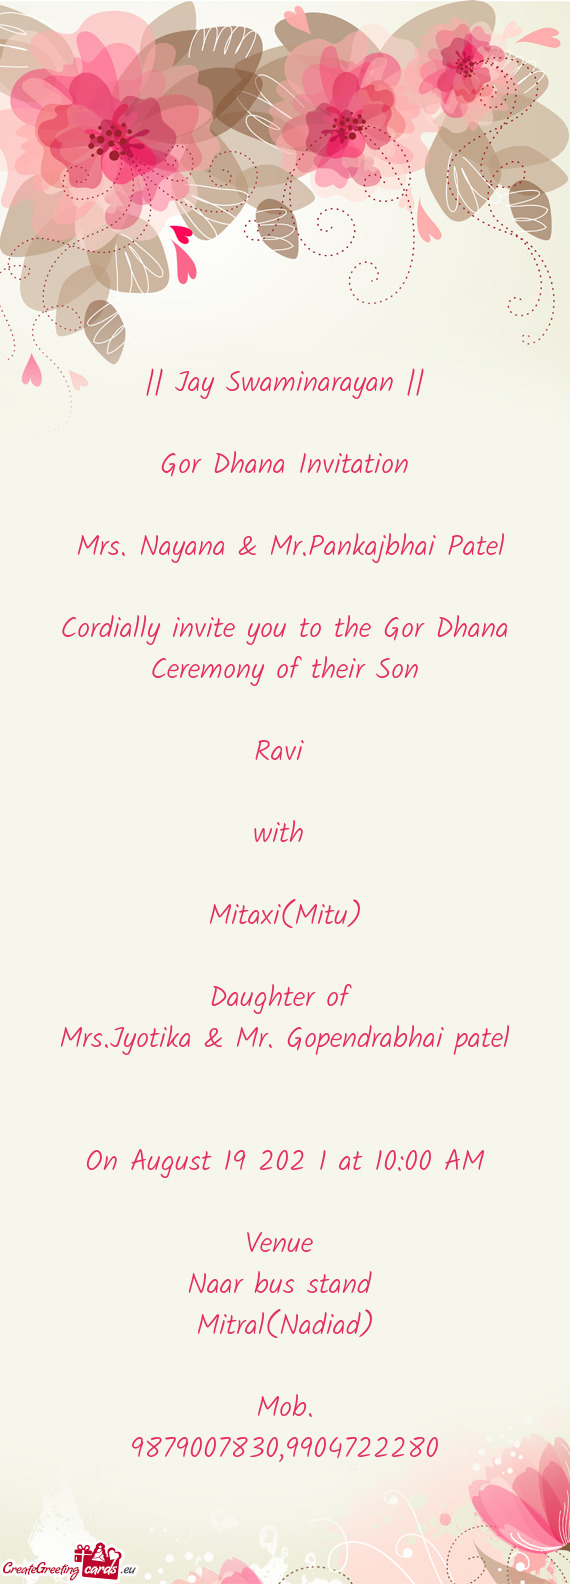 Mrs. Nayana & Mr.Pankajbhai Patel